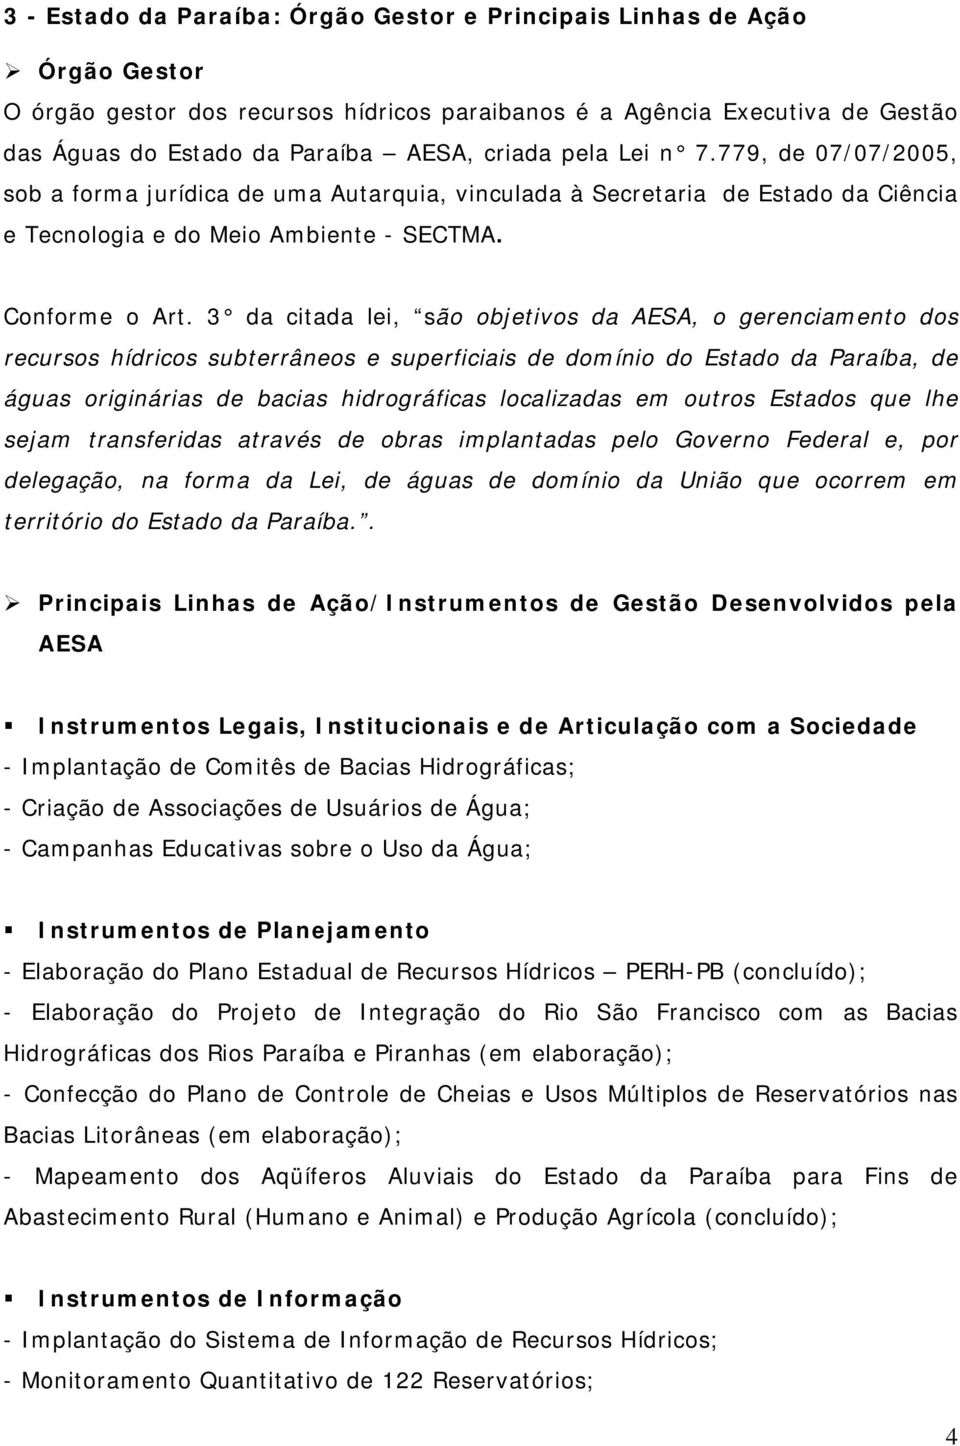 3 da citada lei, são objetivos da AESA, o gerenciamento dos recursos hídricos subterrâneos e superficiais de domínio do Estado da Paraíba, de águas originárias de bacias hidrográficas localizadas em